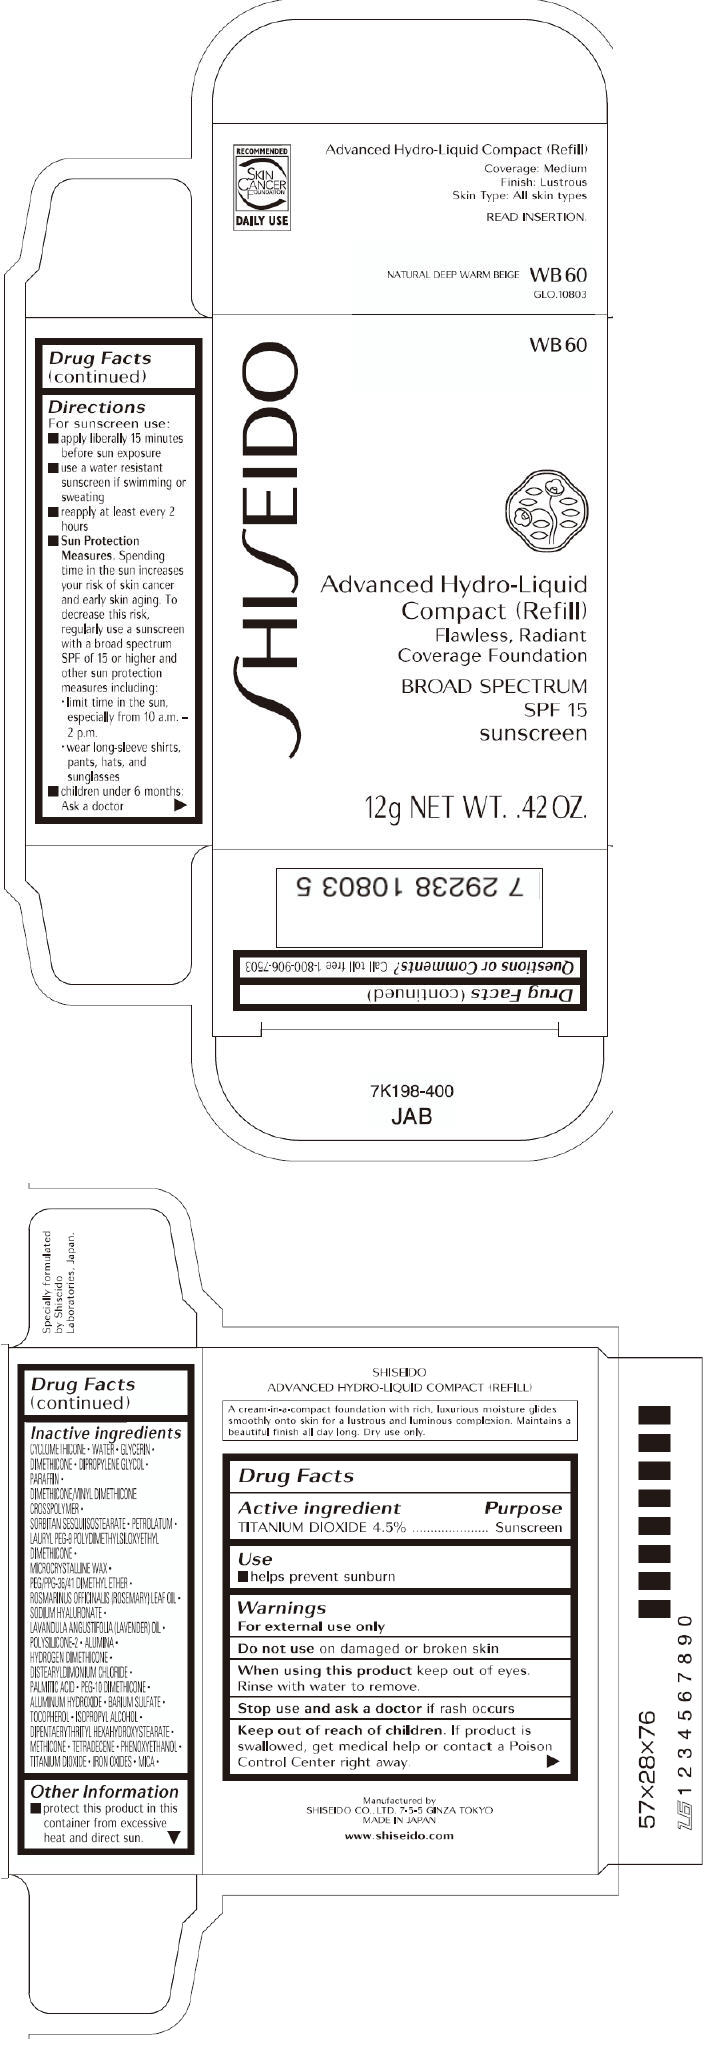 PRINCIPAL DISPLAY PANEL - 12g Carton (WB60)